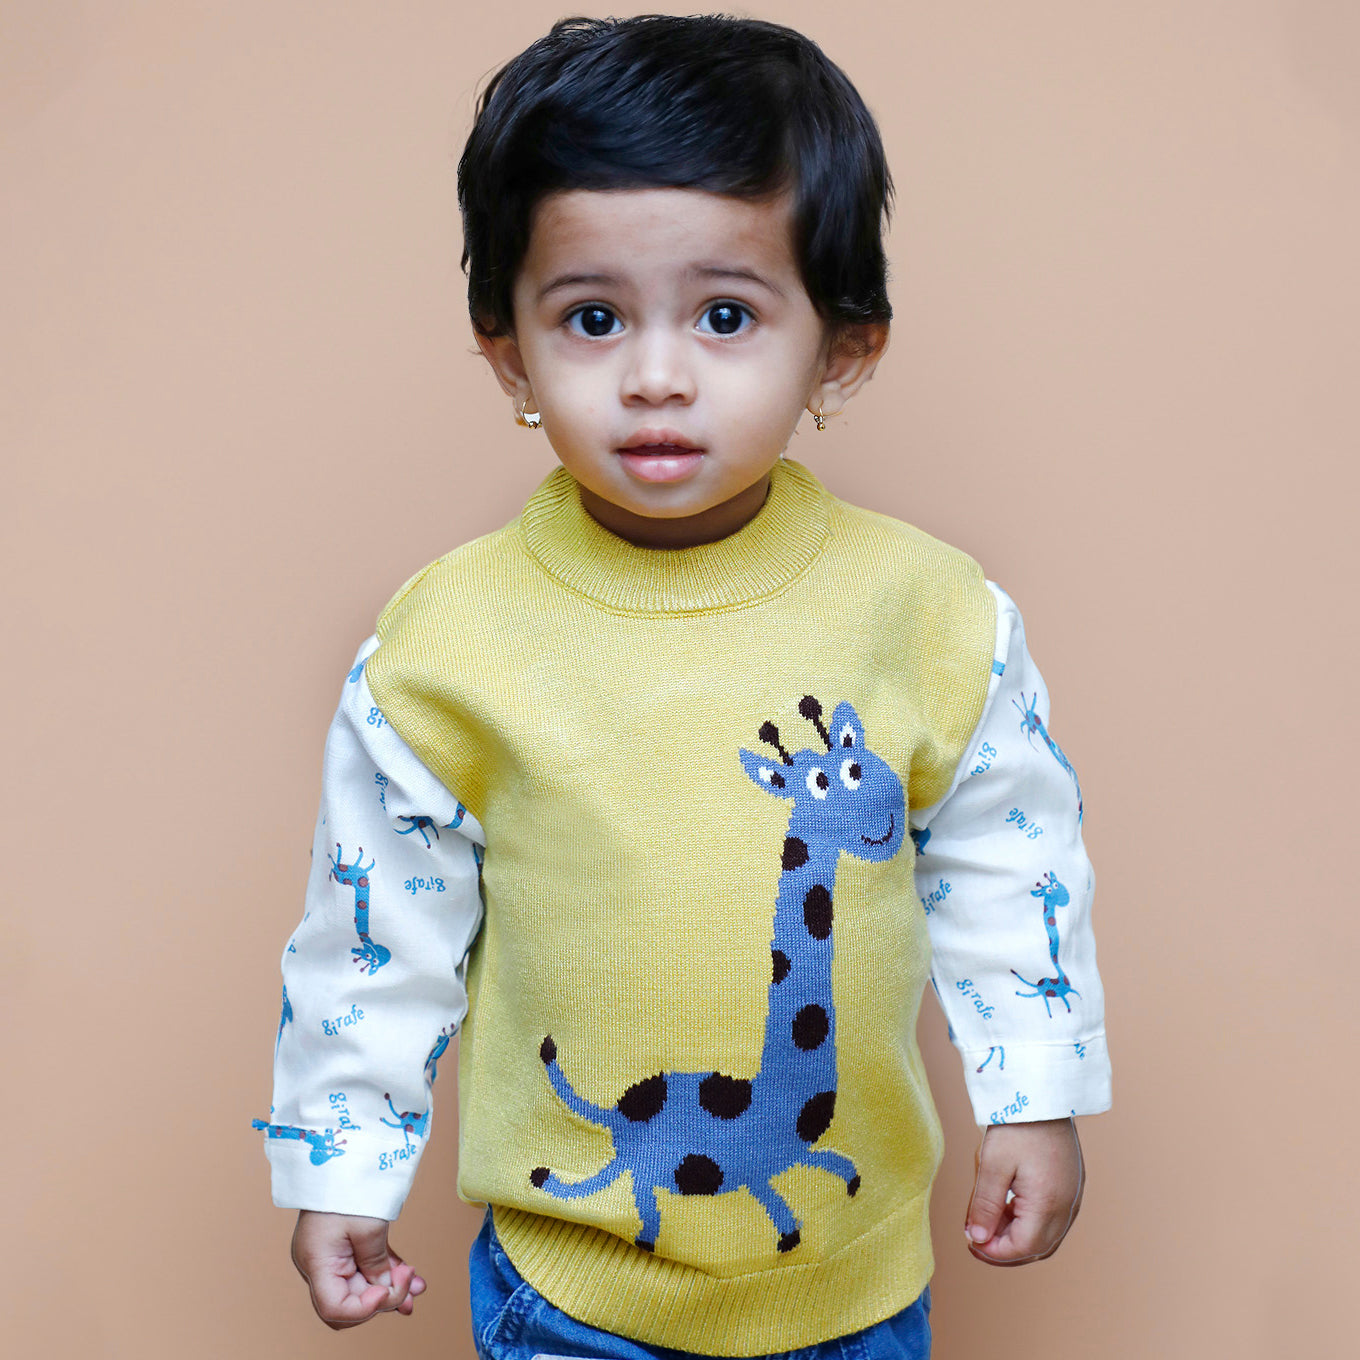 Cute Giraffe Premium Full Sleeves Knitted Sweater - Mustard And White